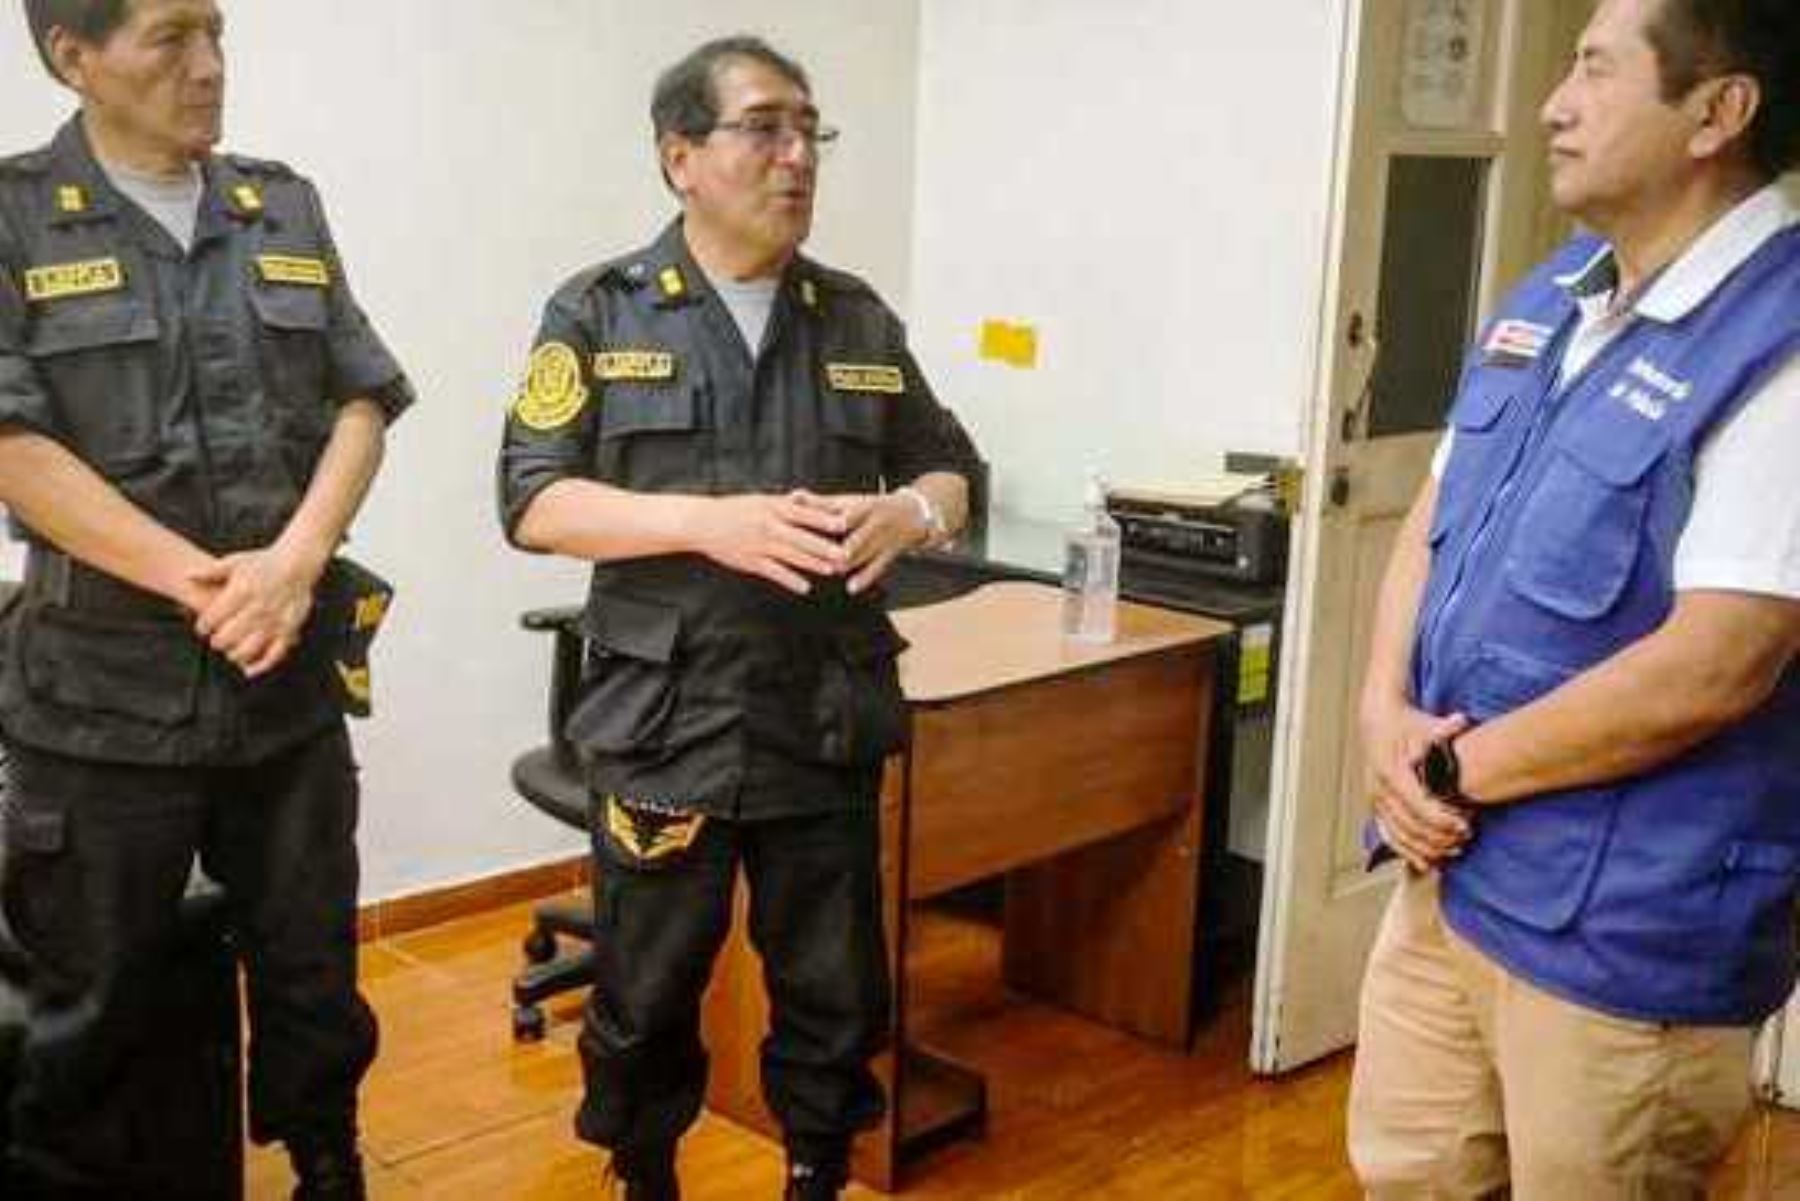 Mininter coordina defensa legal de policías que resguardan orden interno y seguridad. Foto: ANDINA/Difusión.